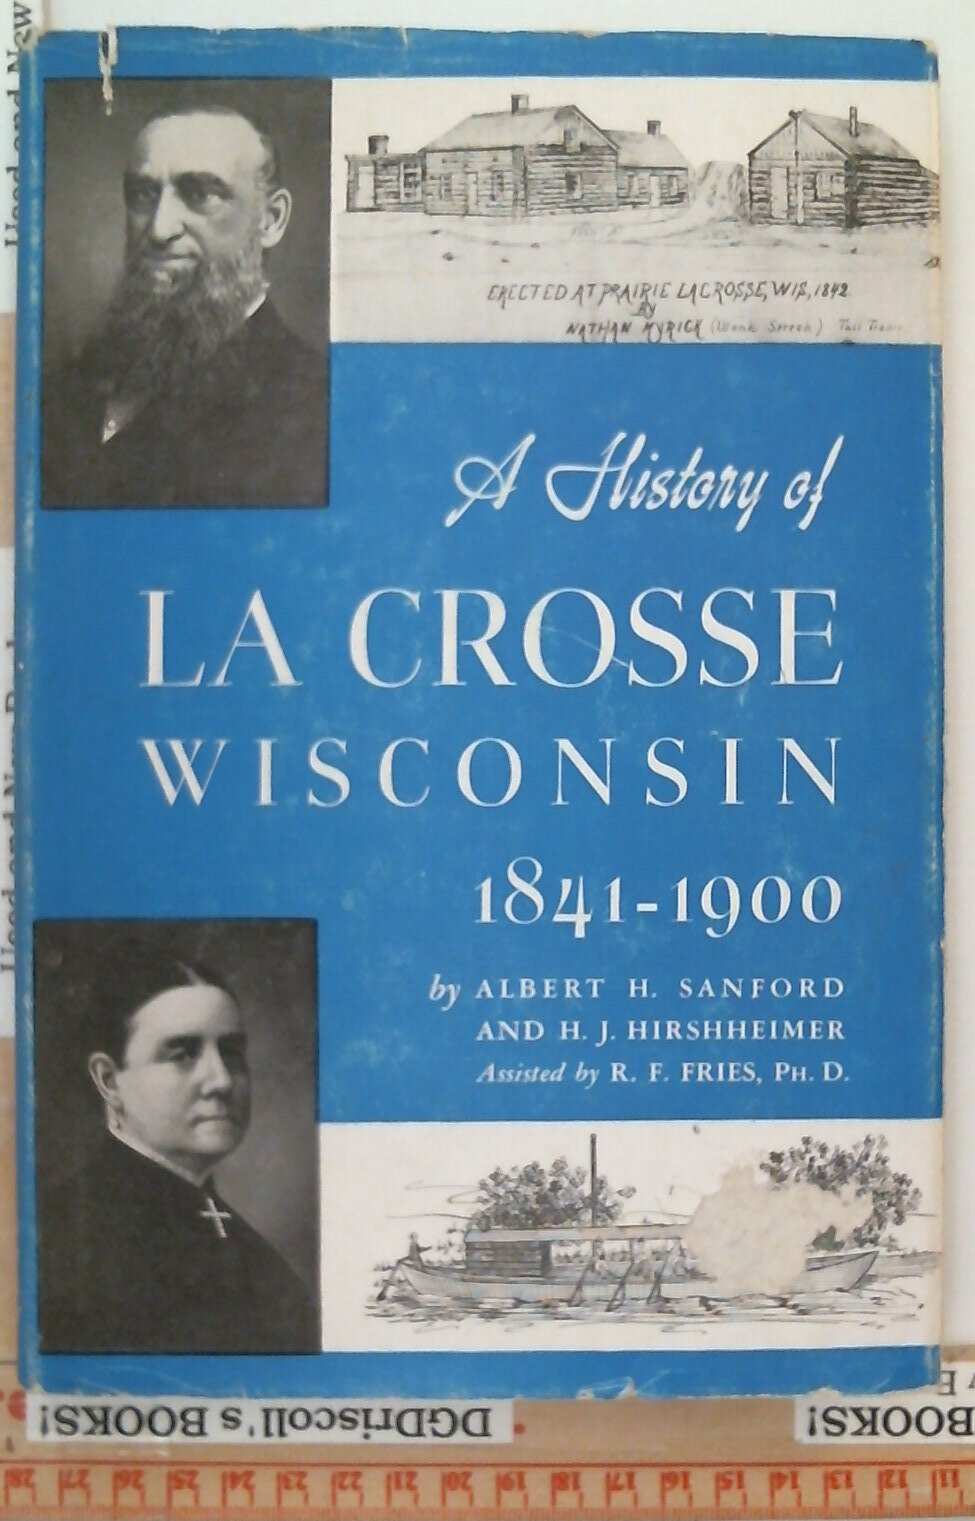 A History of La Crosse Wisconsin 1841-1900